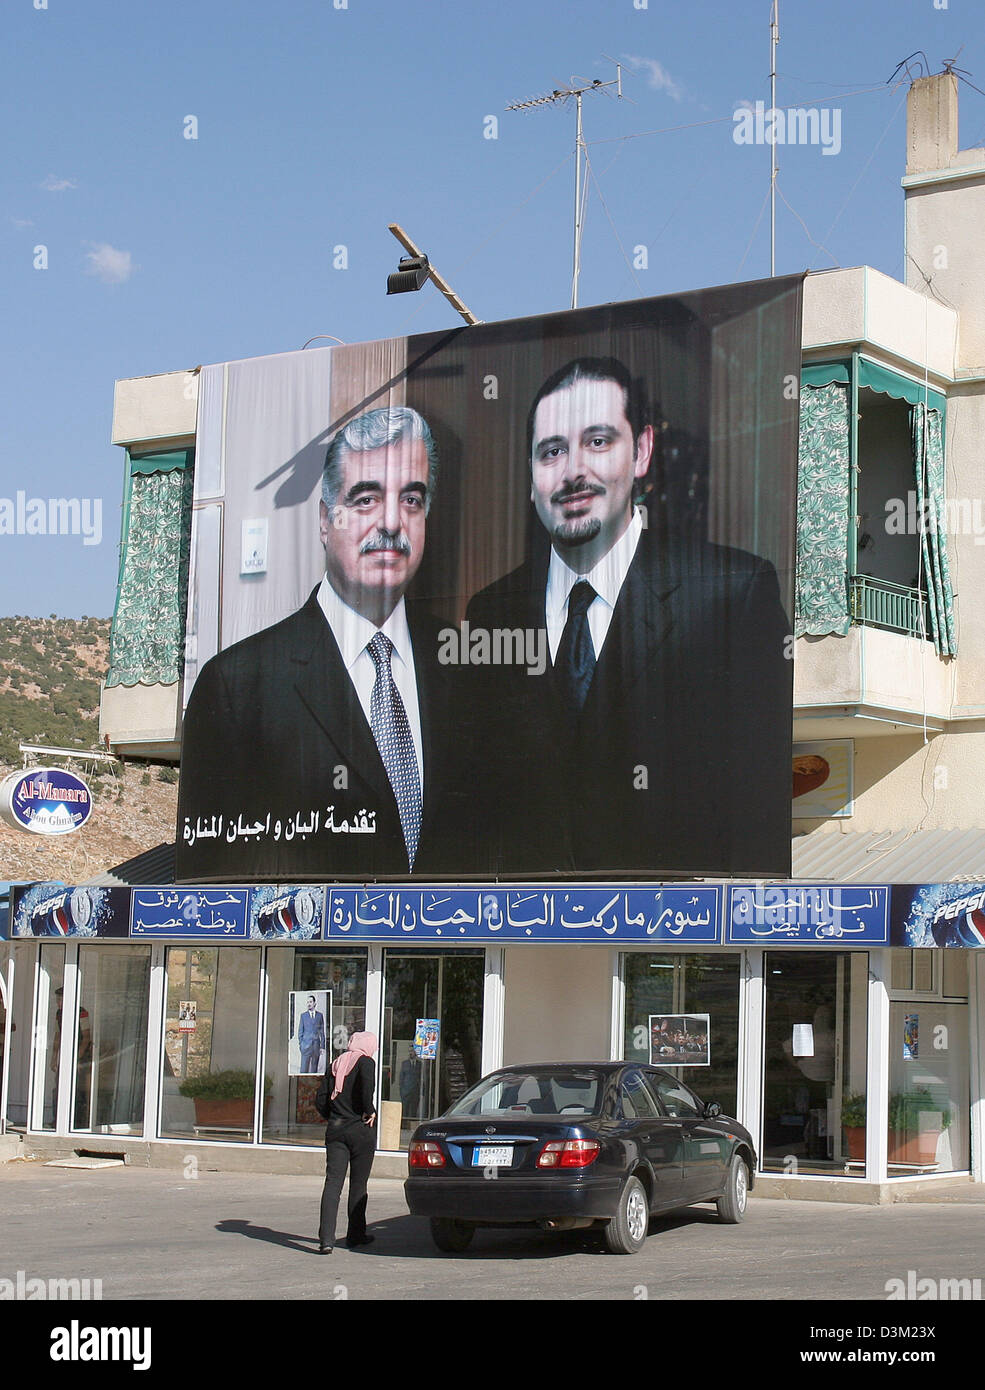 (Dpa) - un partidario ha decorado su casa con un cartel del asesinado político Rafik Hariri (L) y su hijo Saad Hariri cerca de Anjar, Líbano, 01 de octubre de 2005. El ex primer ministro libanés Hariri y otras 20 personas fueron muertas en un atentado el 14 de febrero de 2005. Respecto a un informe de la ONU publicado el 21 de octubre de 2005, fuerzas de seguridad sirias estaban involucrados en la assassinat Foto de stock